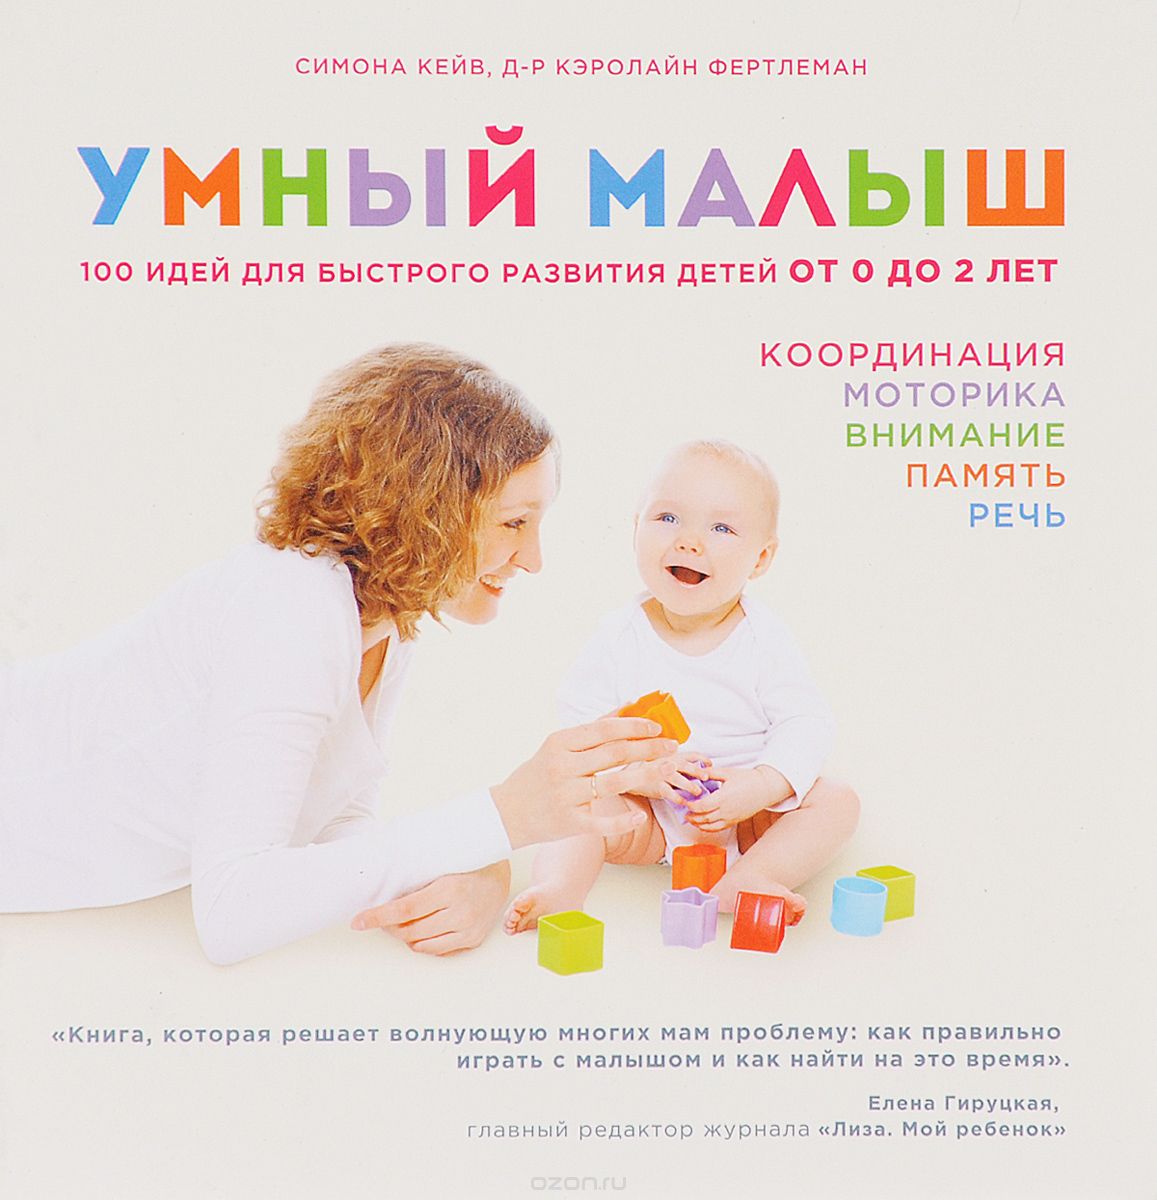 Скачать книгу "Умный малыш. 100 идей для быстрого развития детей от 0 до 2 лет, Симона Кейв, Кэролайн Фертлеман"